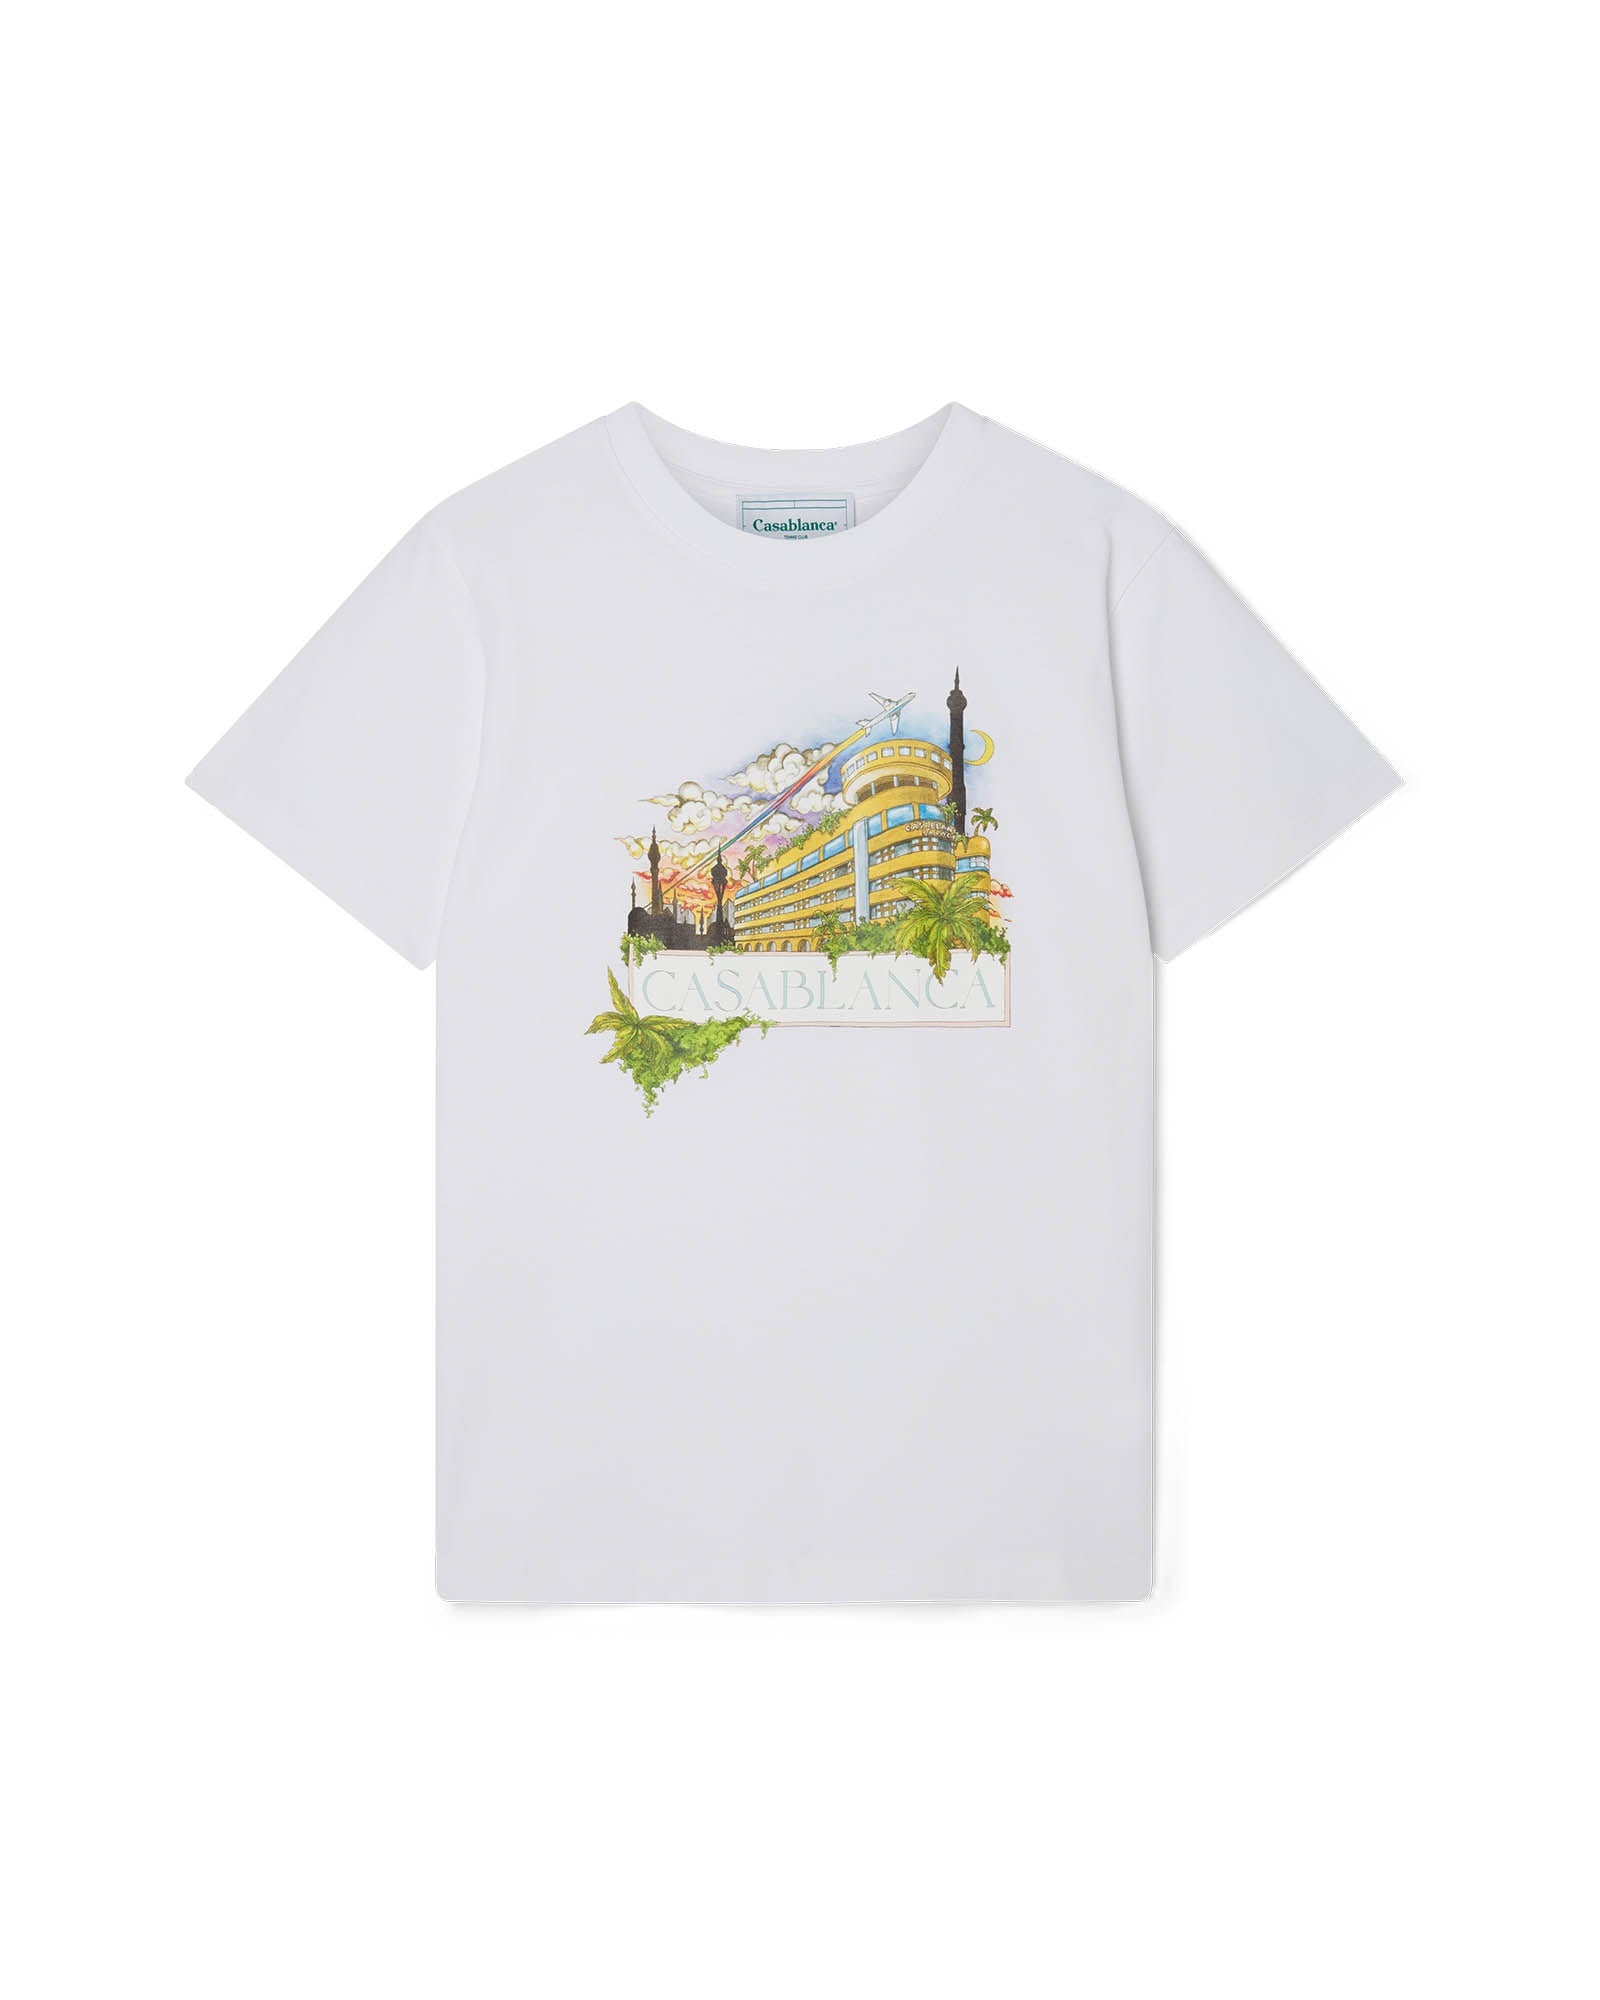 Casablanca Palace T-Shirt - 1